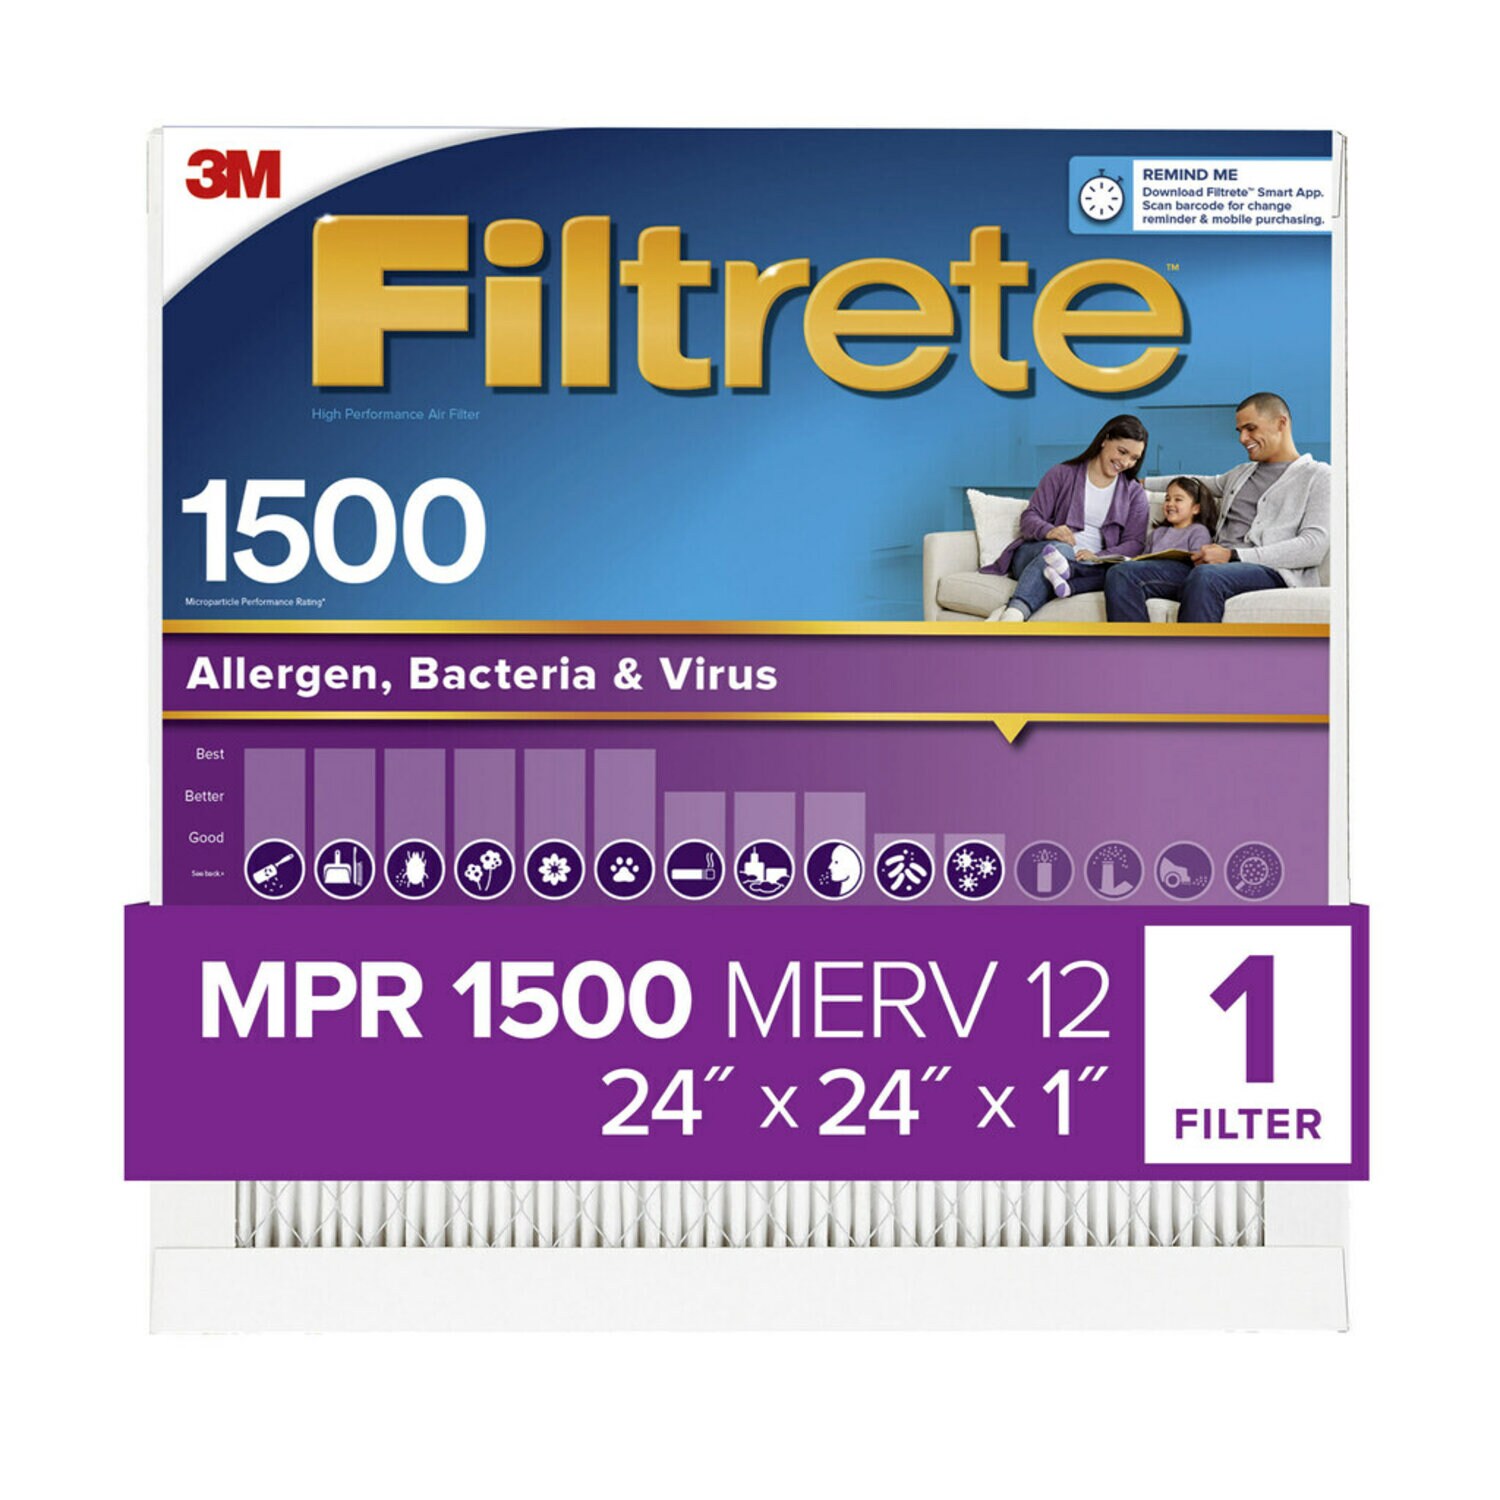 7100266374 - Filtrete High Performance Air Filter 1500 MPR 2012DC-6, 24 in x 24 in x 1 in (60.9 cm x 60.9 cm x 2.5 cm)